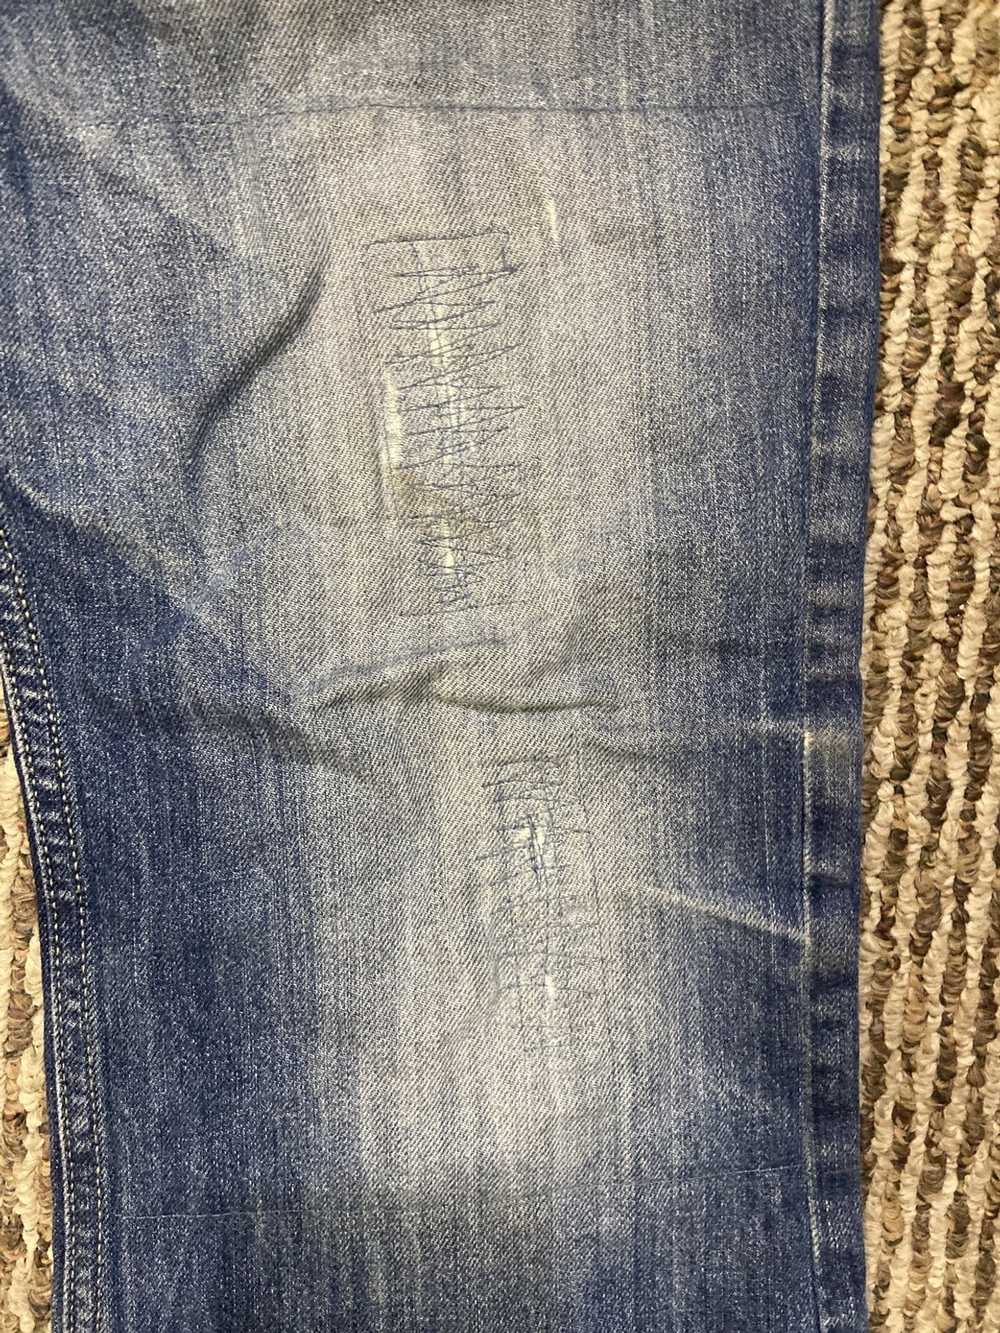 Diesel Diesel repaired patchwork jeans - image 4